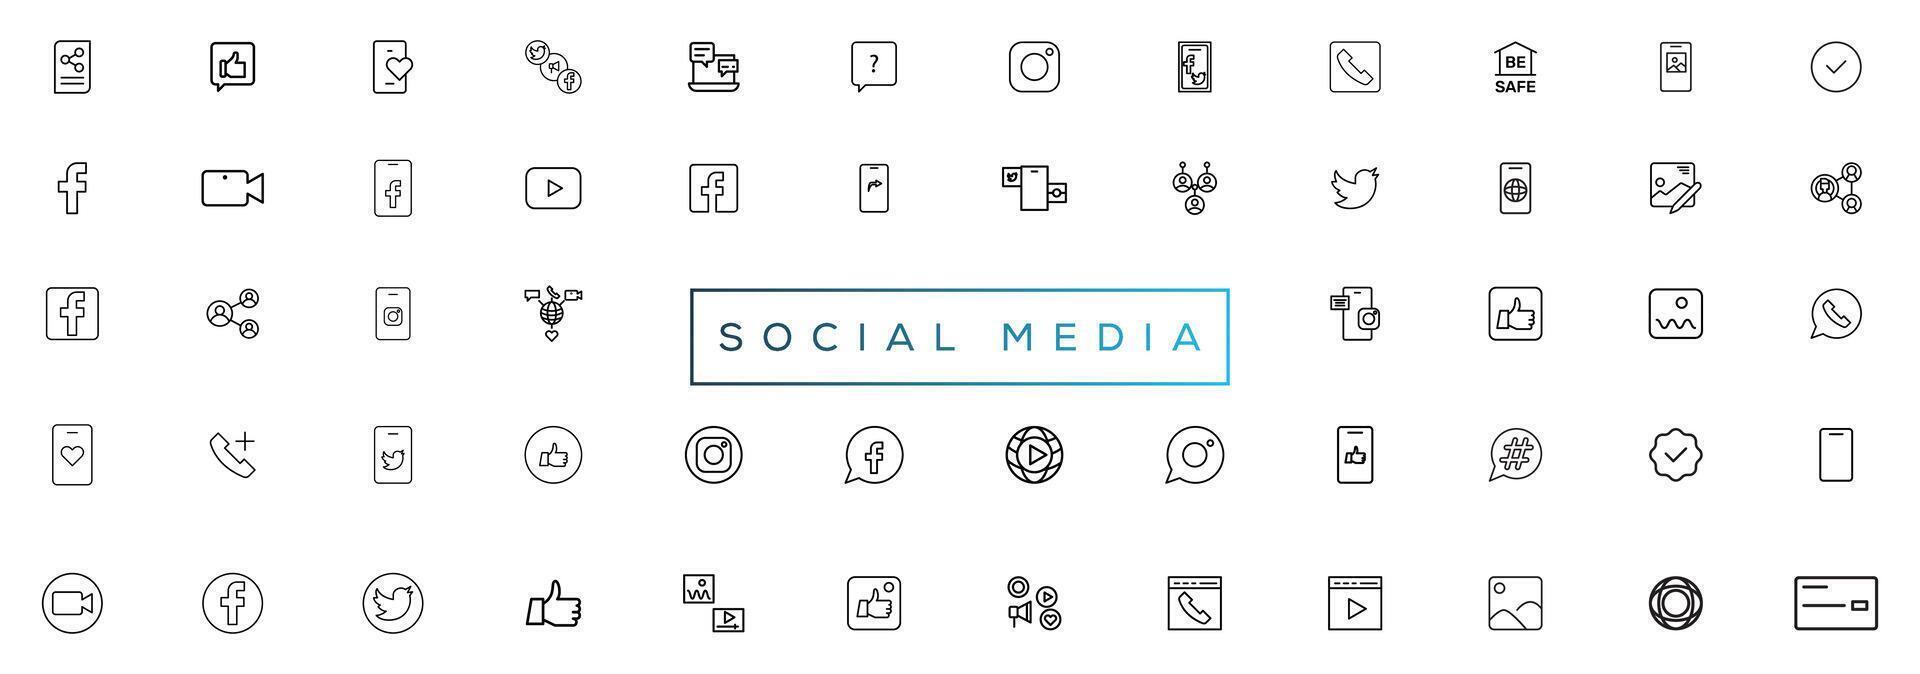 facebook, twitteren, instagram, youtube, snapchat, pinterest, watsap, gekoppeld, periscoop, vimeo - verzameling van populair sociaal media logo. sociaal media pictogrammen. realistisch reeks vector